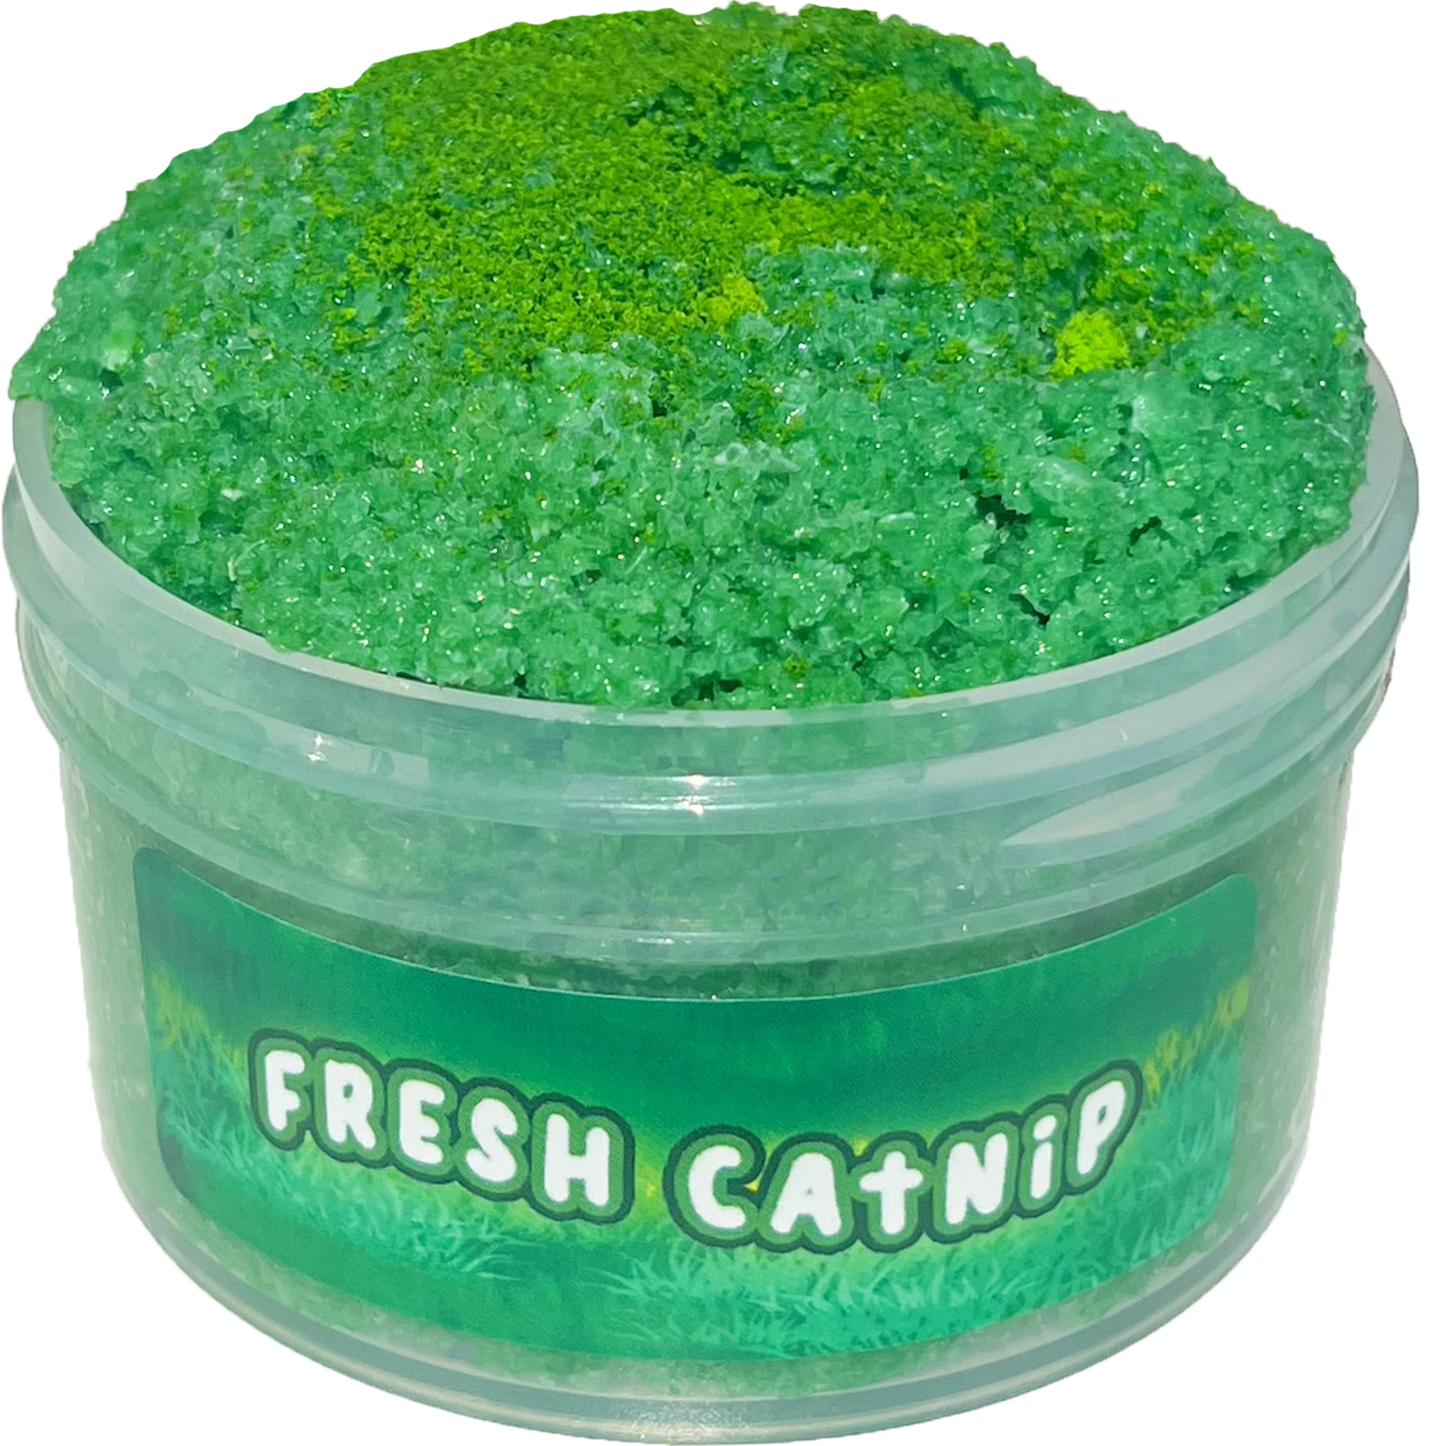 Fresh Catnip Slime